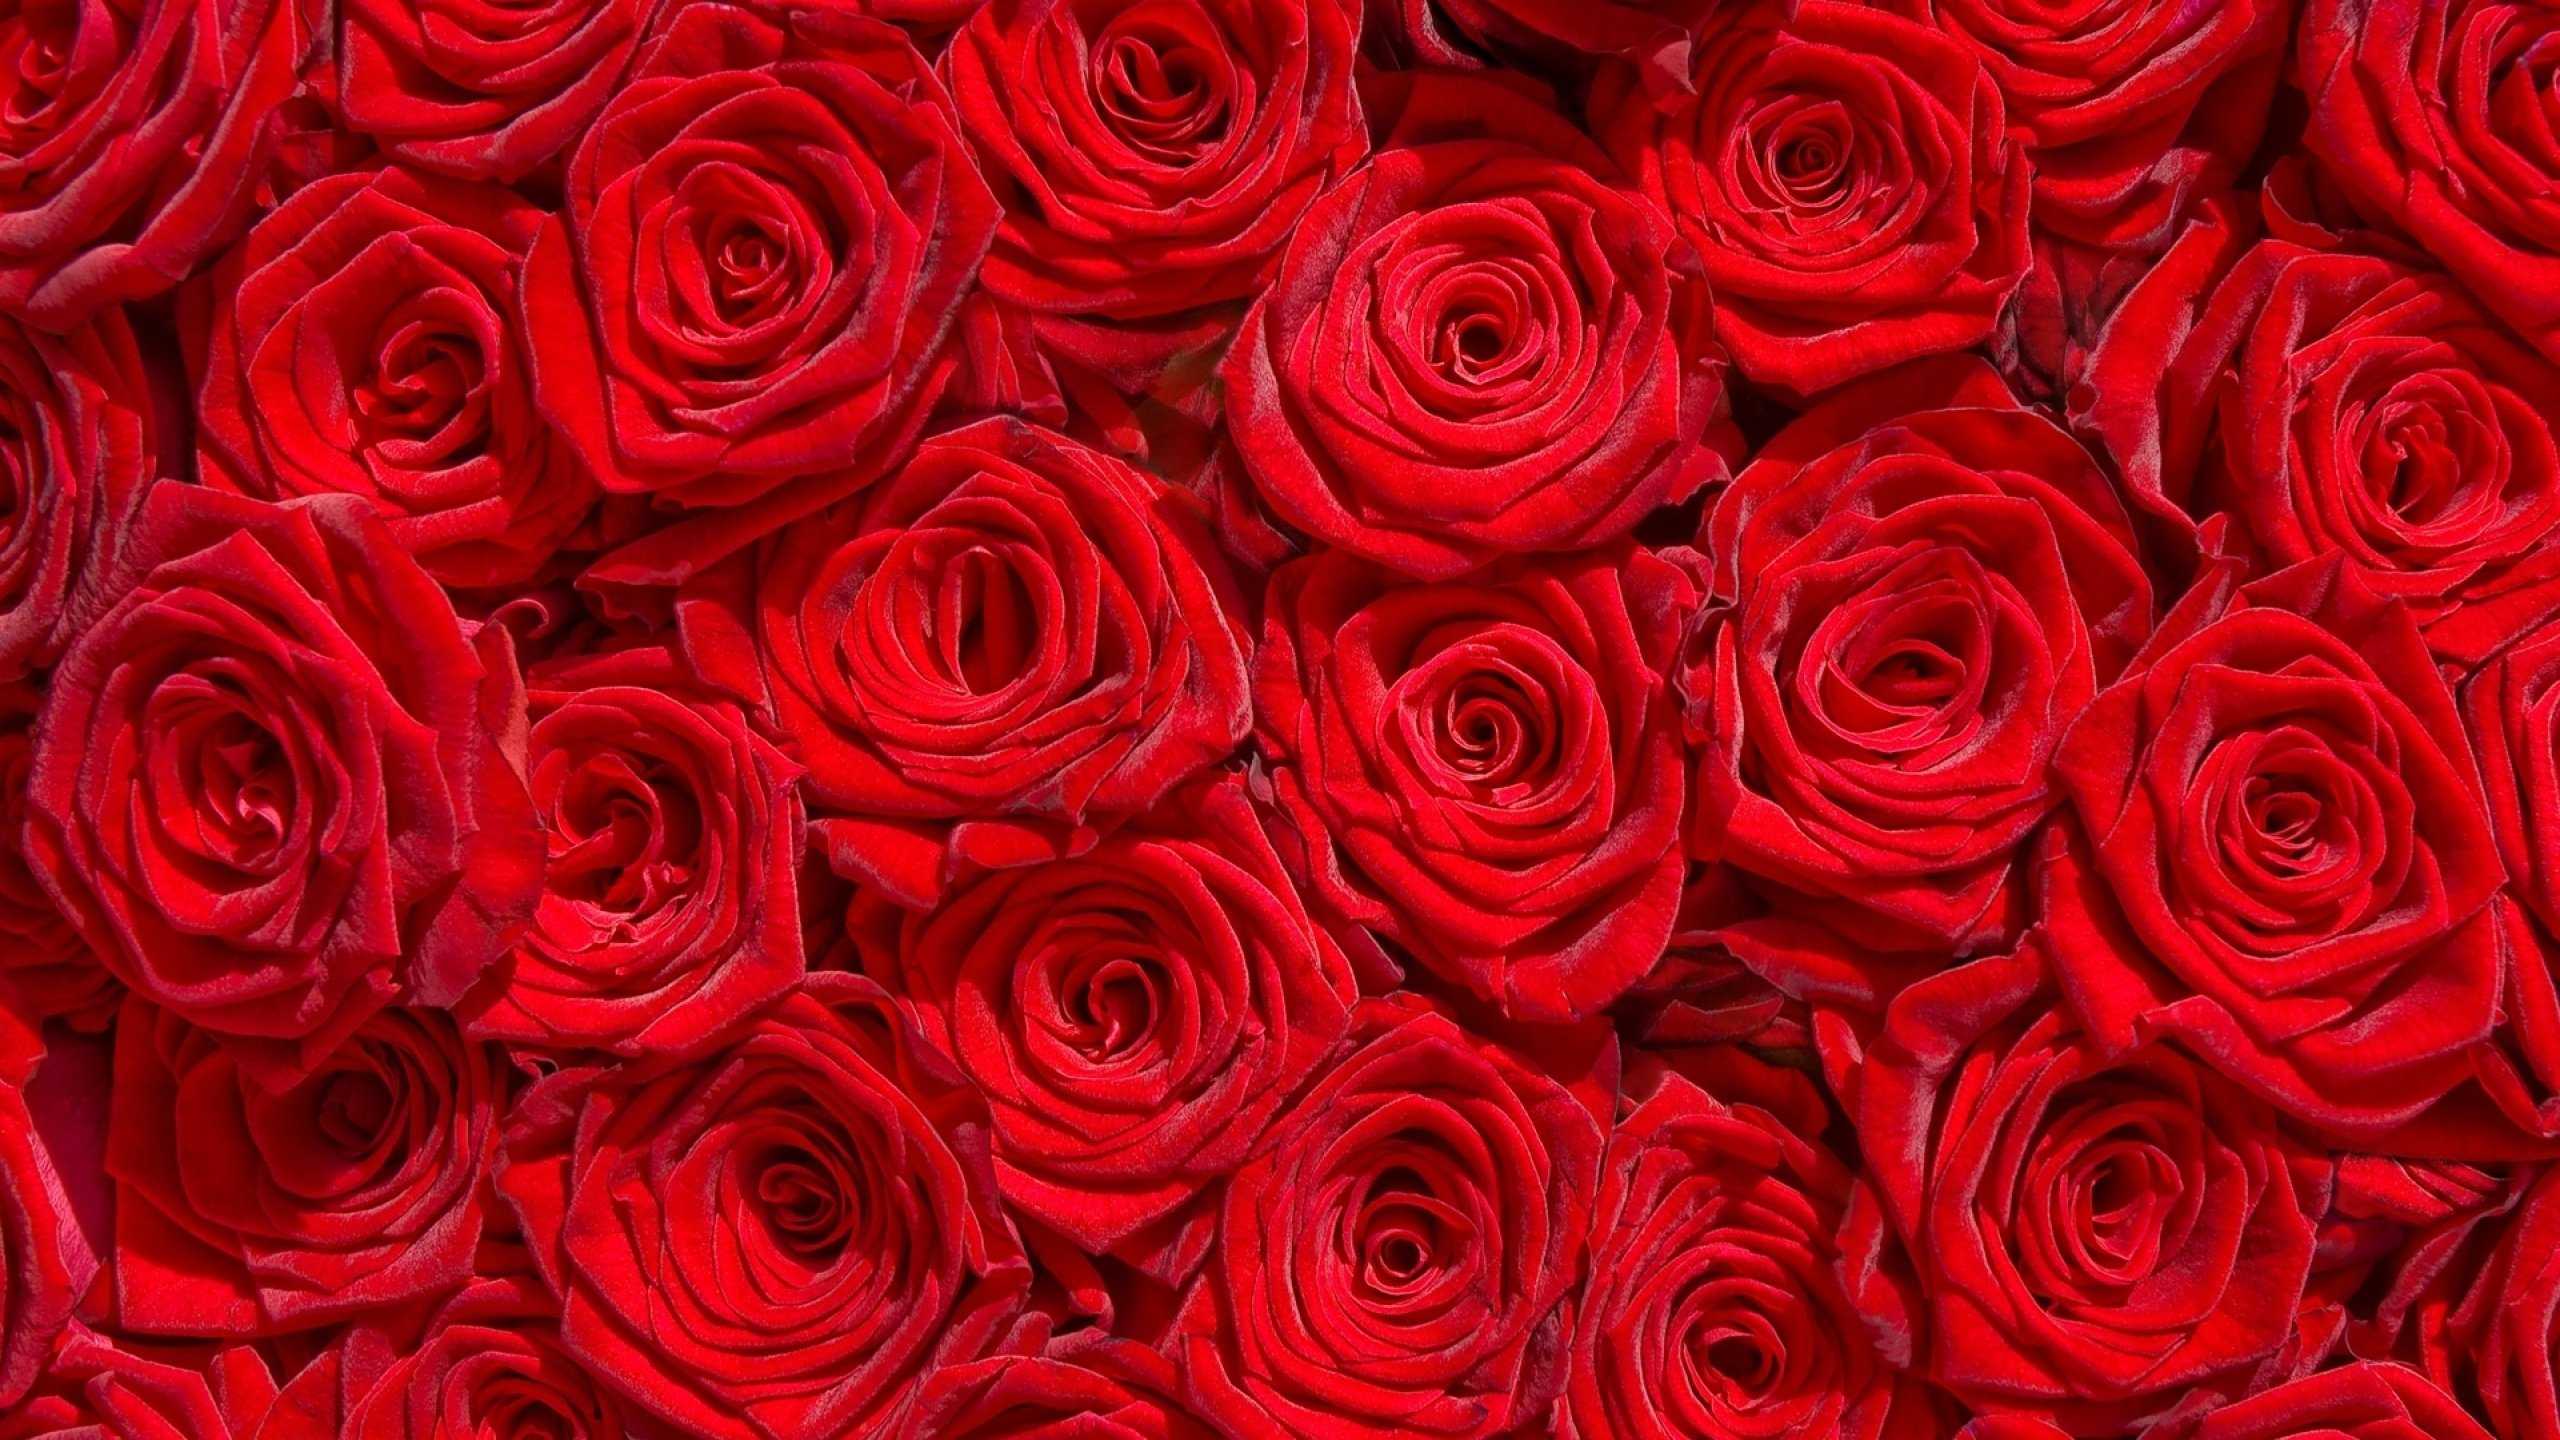 Red Rose Garden Wallpaper HD Image Full Flowers Flower Roses Bokeh